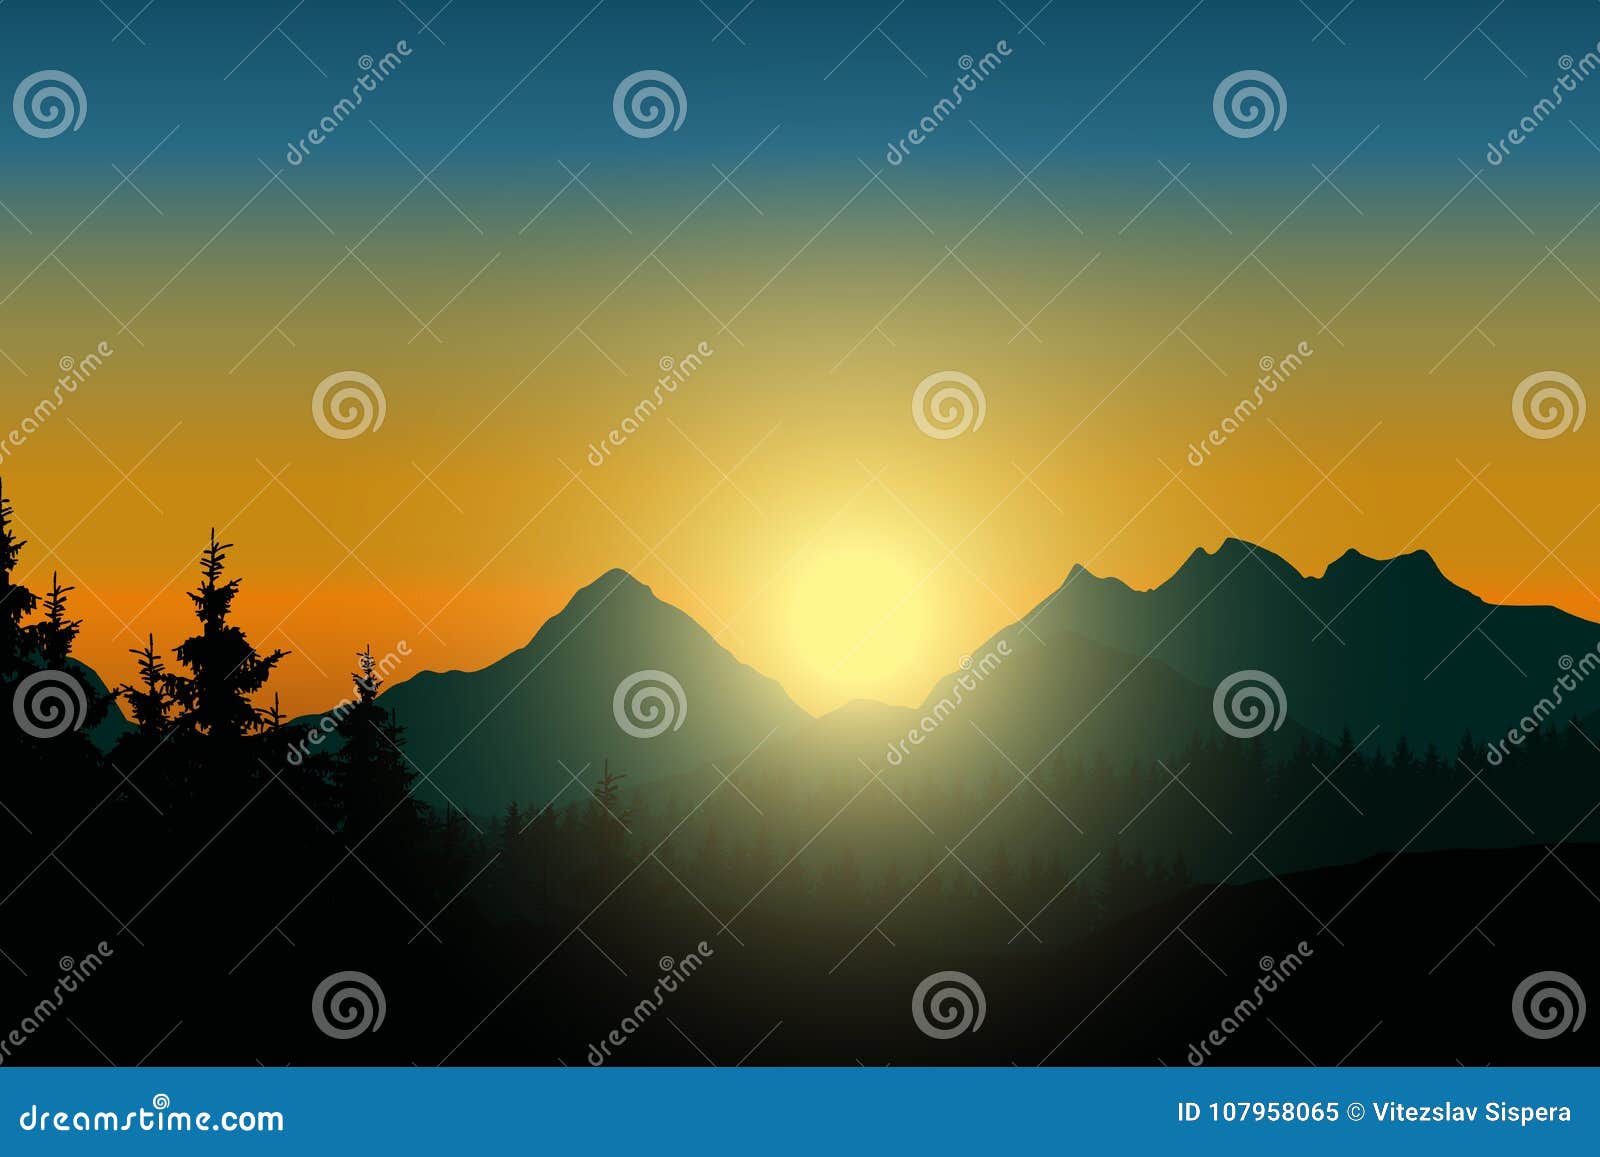 Paysage De Montagne Avec La Foret Sous Le Ciel Avec Le Soleil Levant Illustration De Vecteur Illustration Du Brouillard Horizon